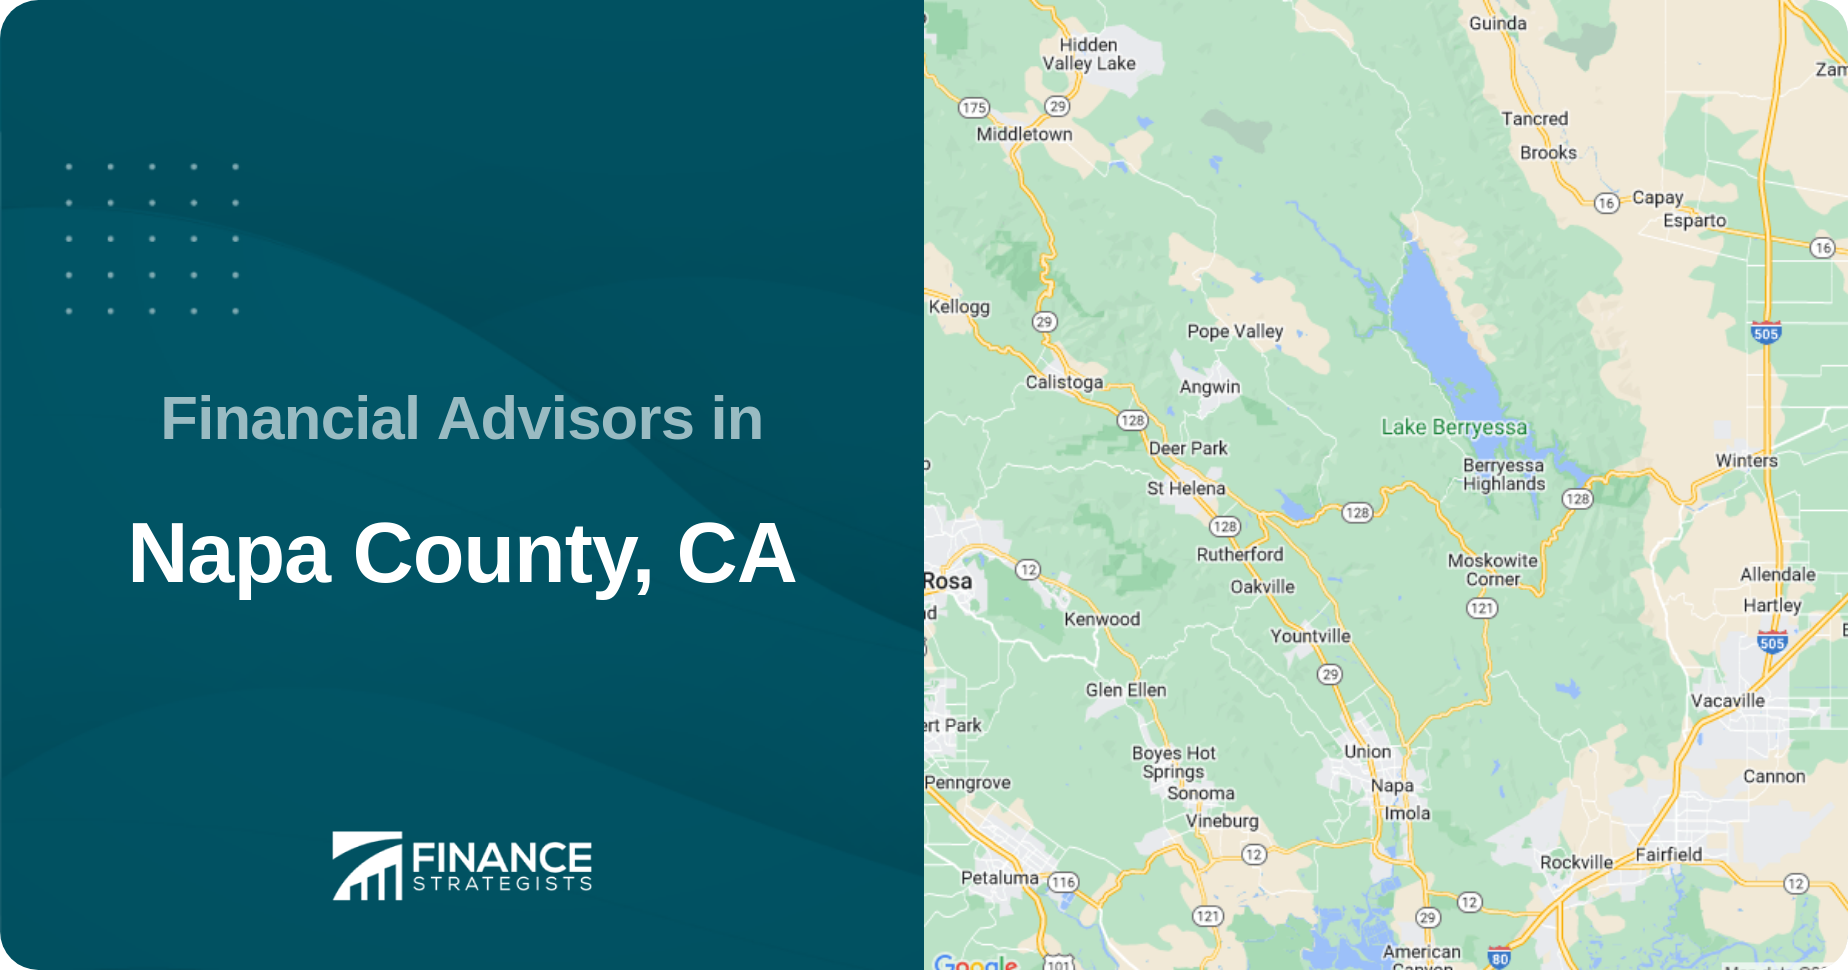 Financial Advisors in Napa County, CA